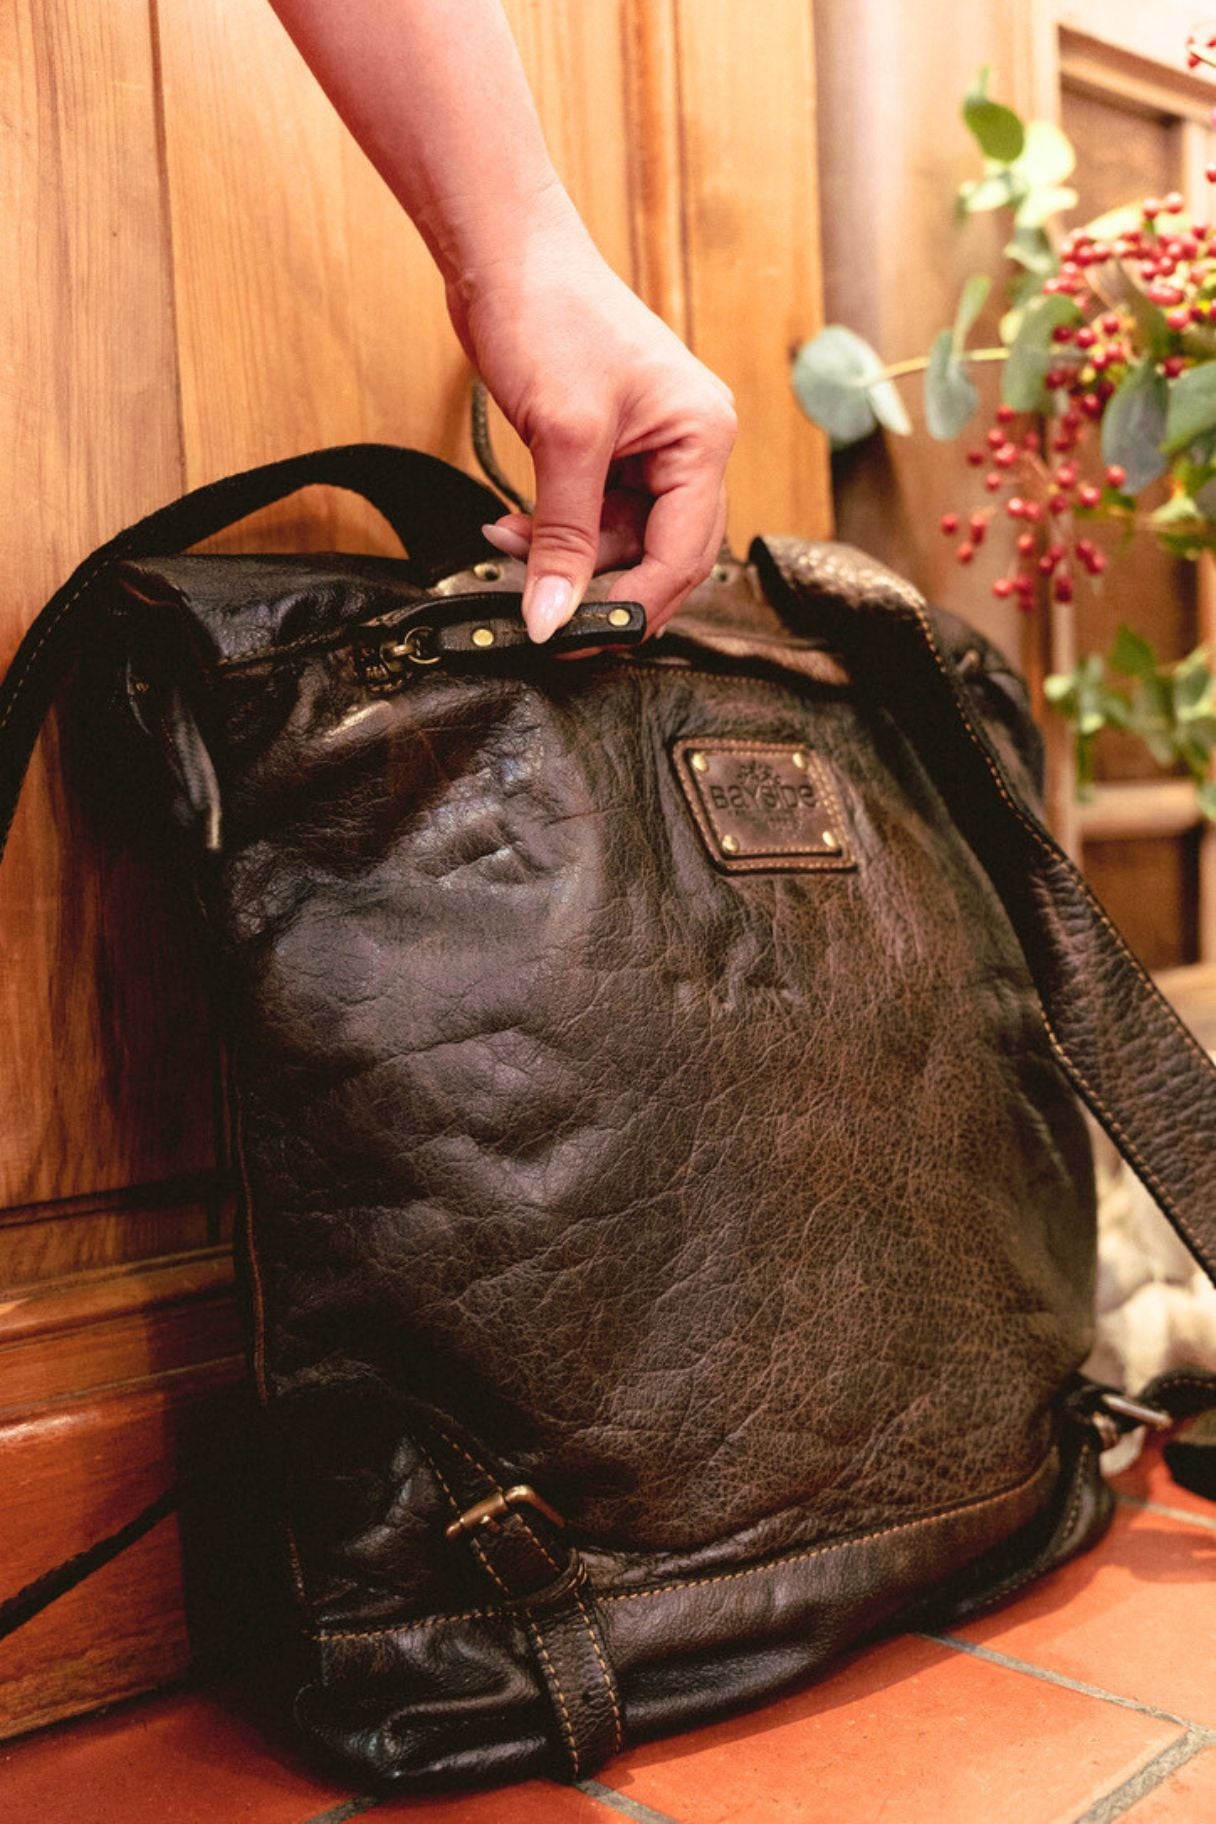 Grand sac à dos marron foncé en cuir vintage - Modèle Bologne - Nappa Maroquinerie